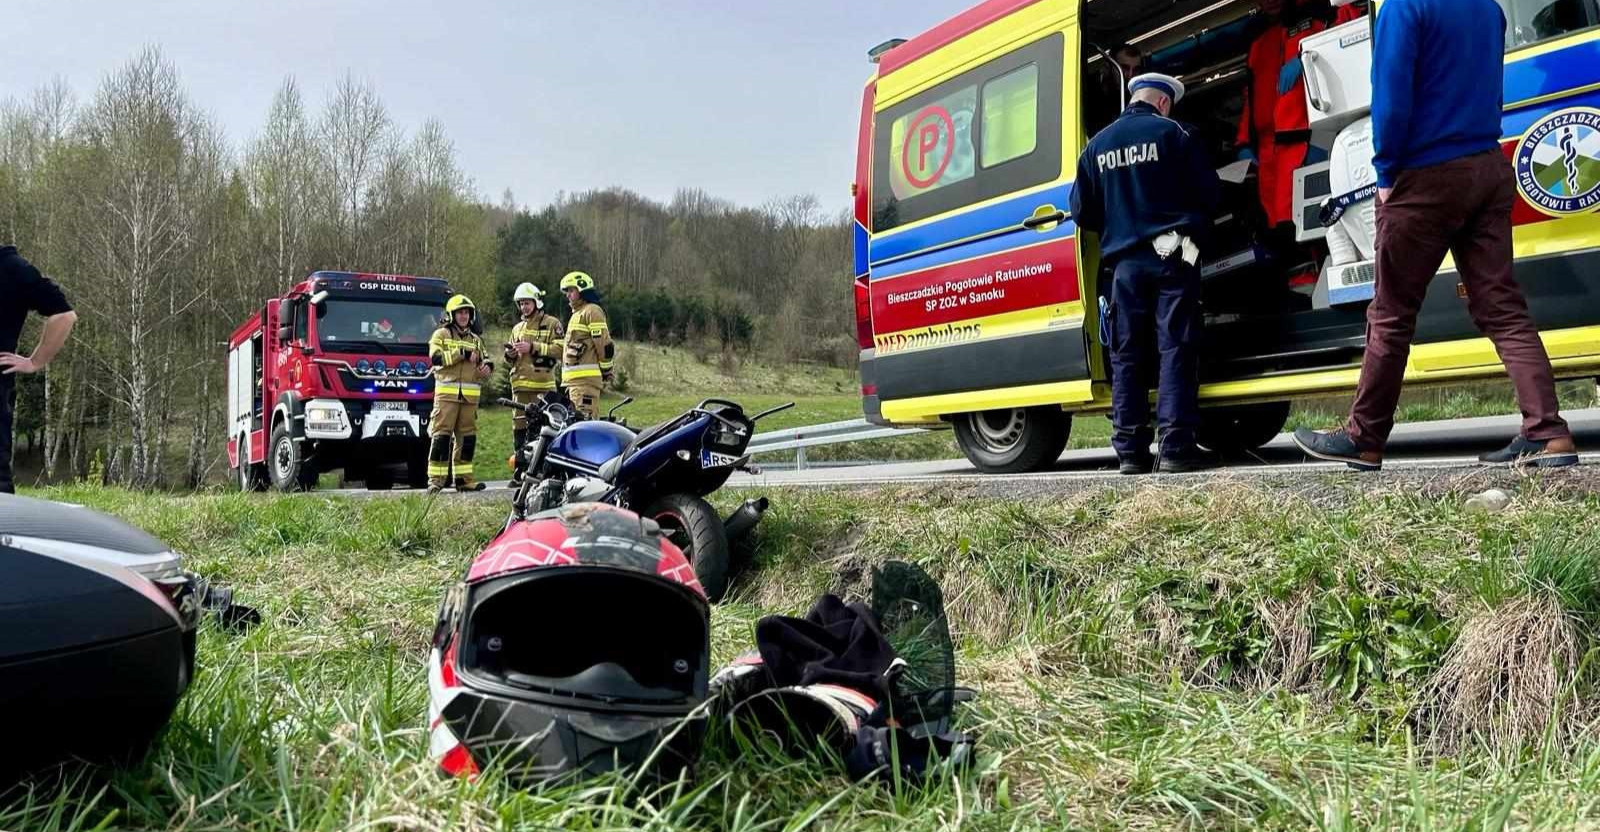 IZDEBKI: Wypadek motocyklisty na serpentynach (ZDJĘCIA)